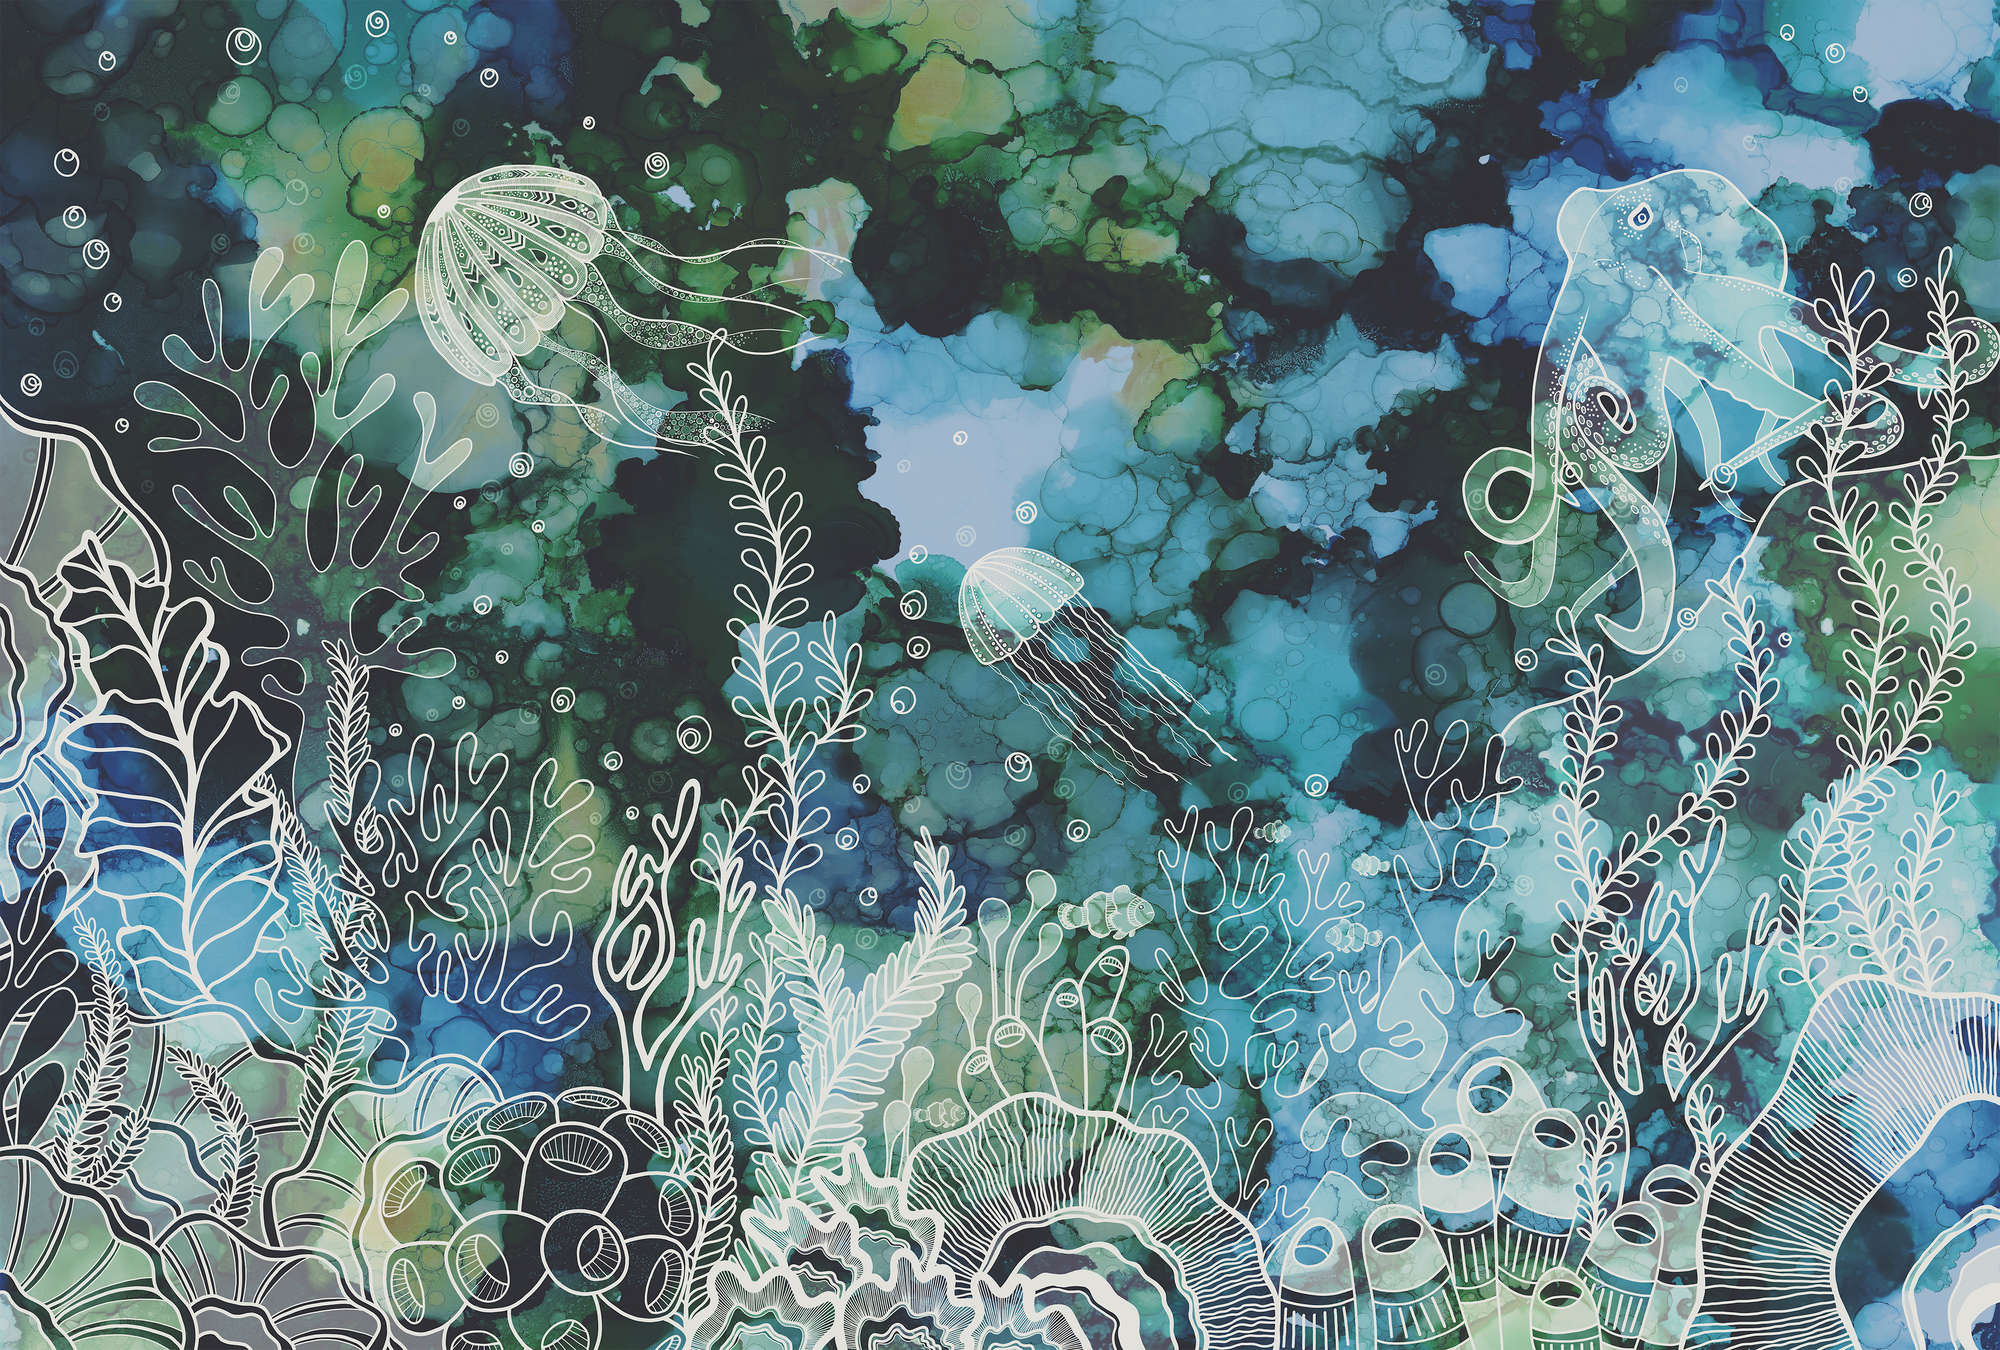             Papier peint panoramique avec récif de corail sous-marin en couleurs acryliques
        